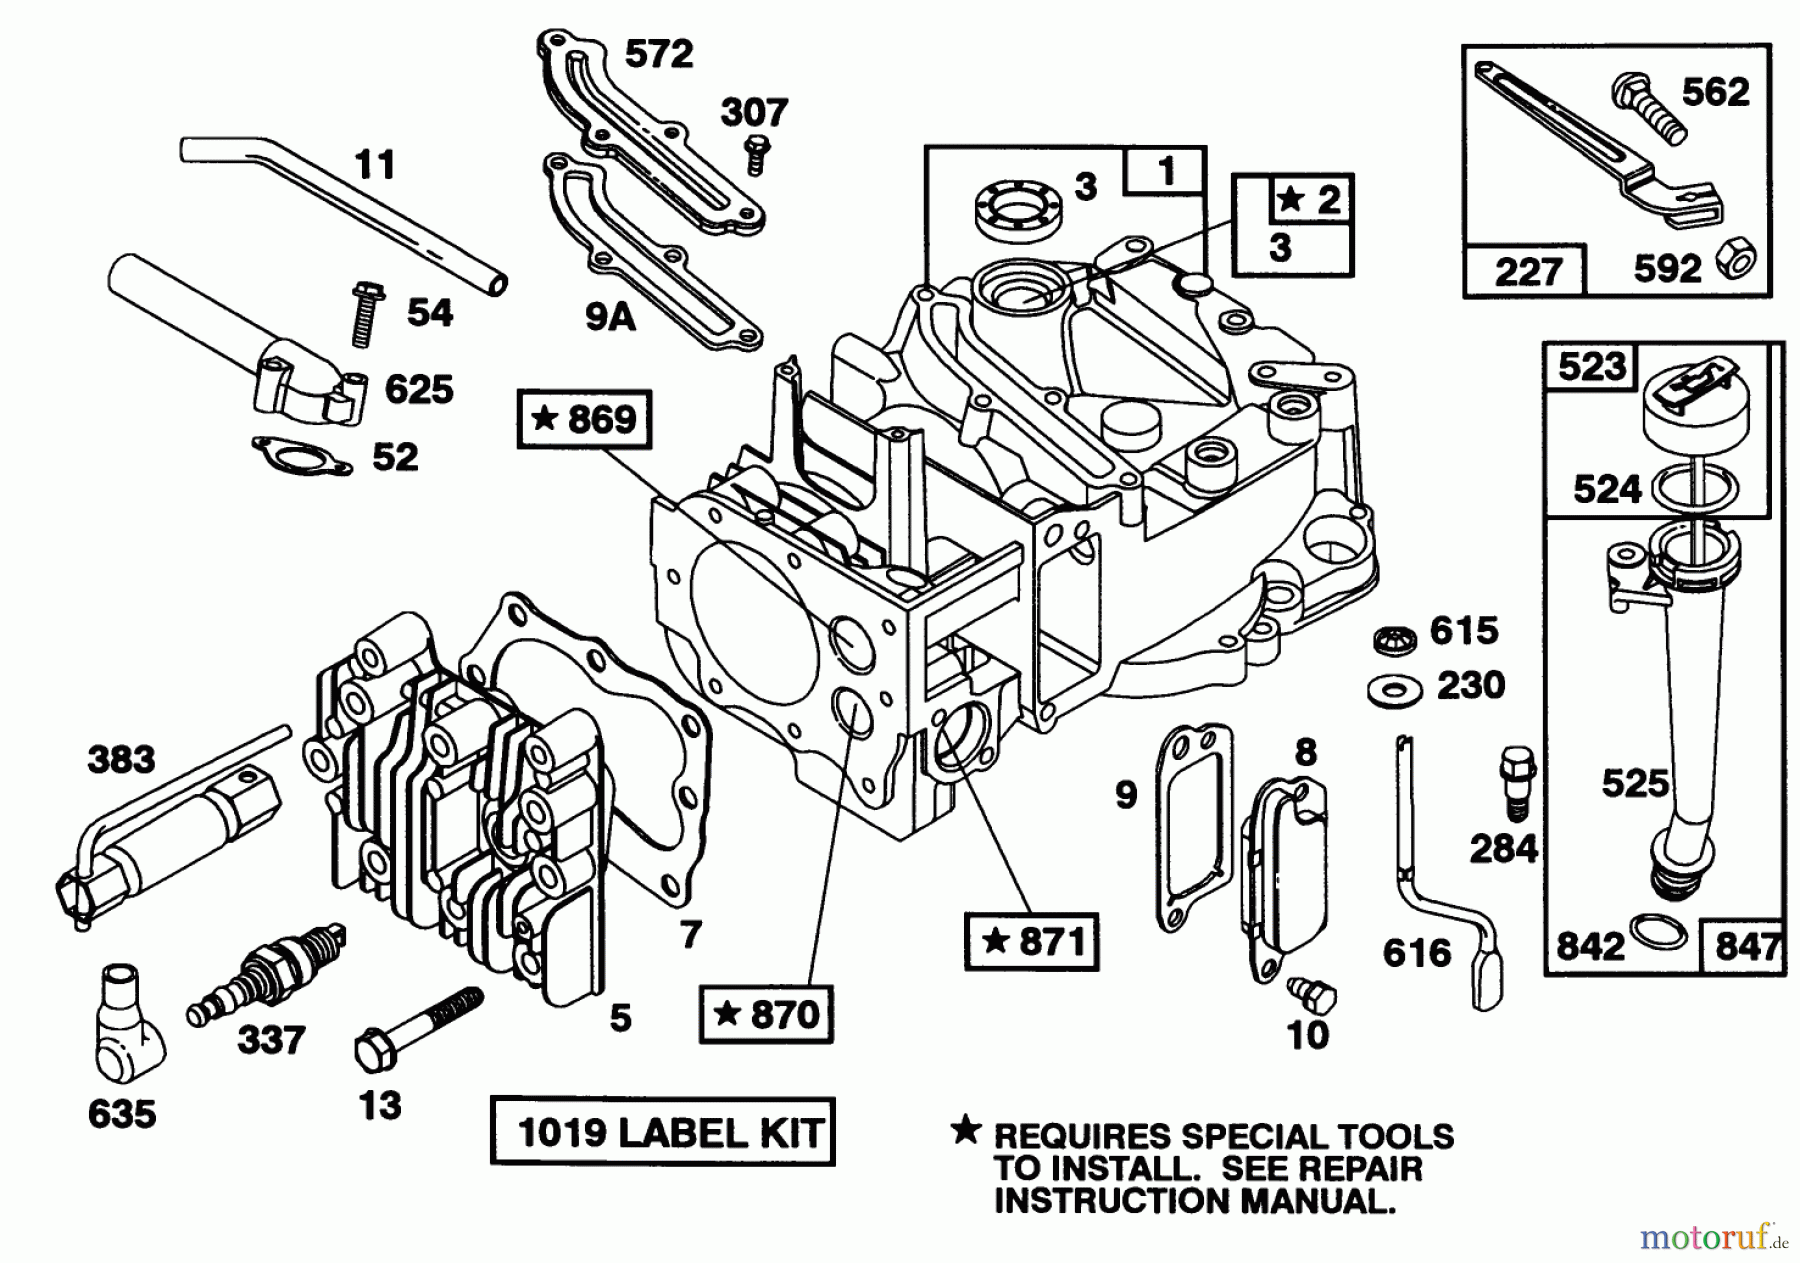  Toro Neu Mowers, Walk-Behind Seite 1 16403 - Toro Lawnmower, 1992 (2000001-2999999) ENGINE BRIGGS & STRATTON MODEL 122702-3171-01 #1